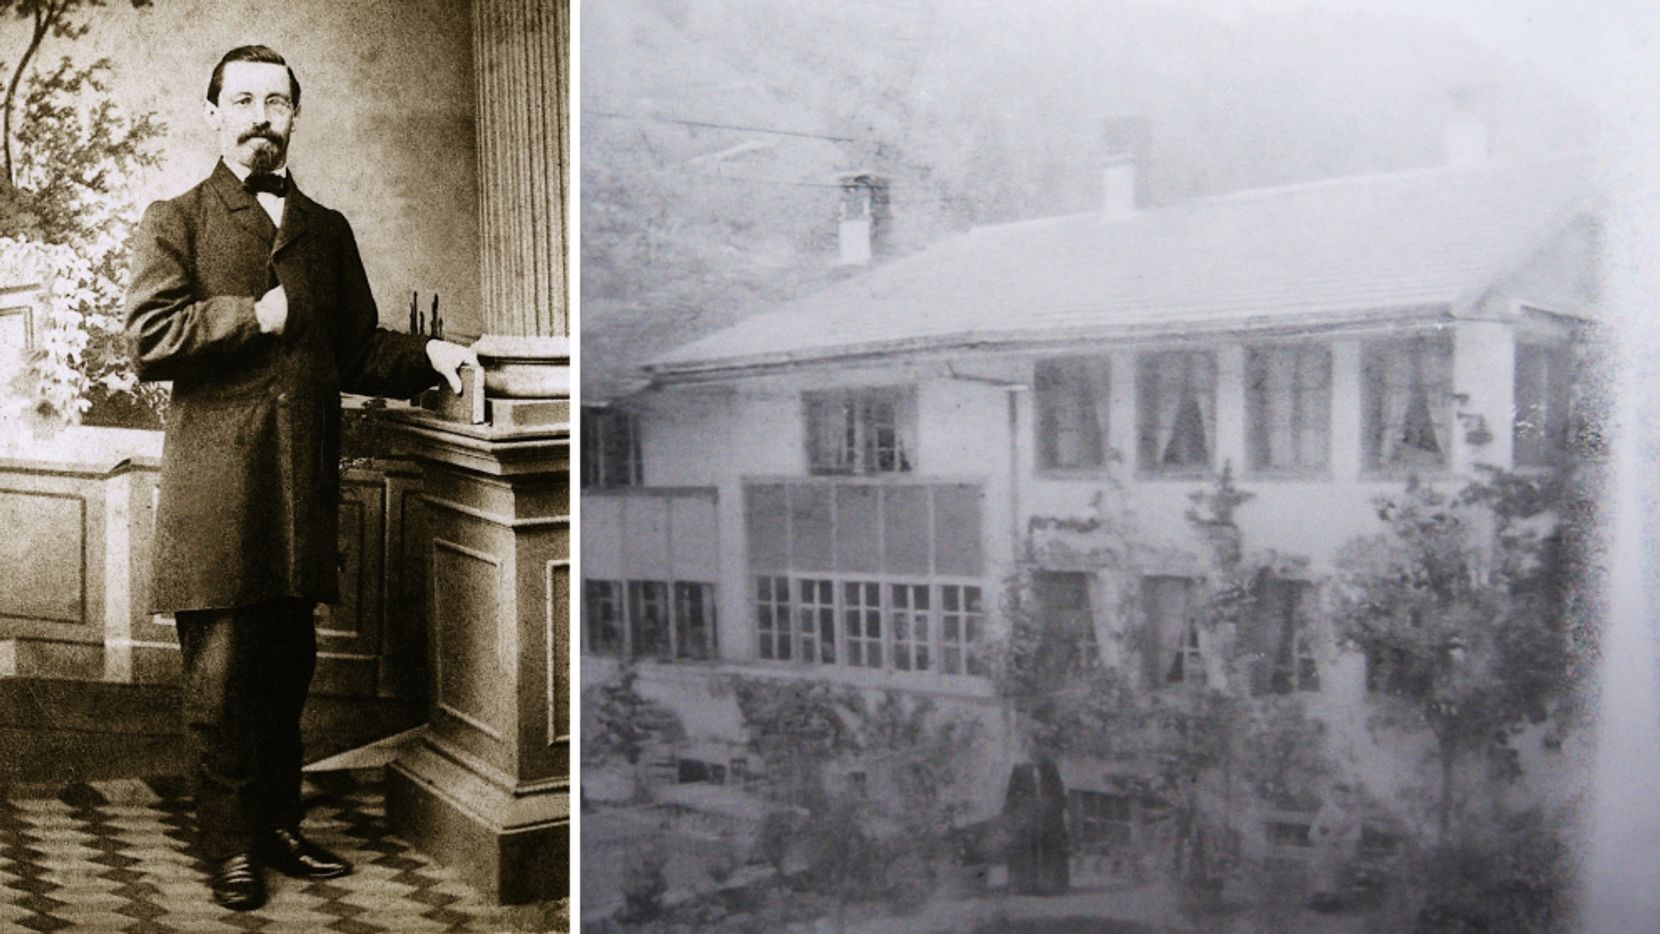 Man sieht links eine Fotografie eines Mannes. Und rechts eine alte Fotoaufnahme eines Flarzhauses.